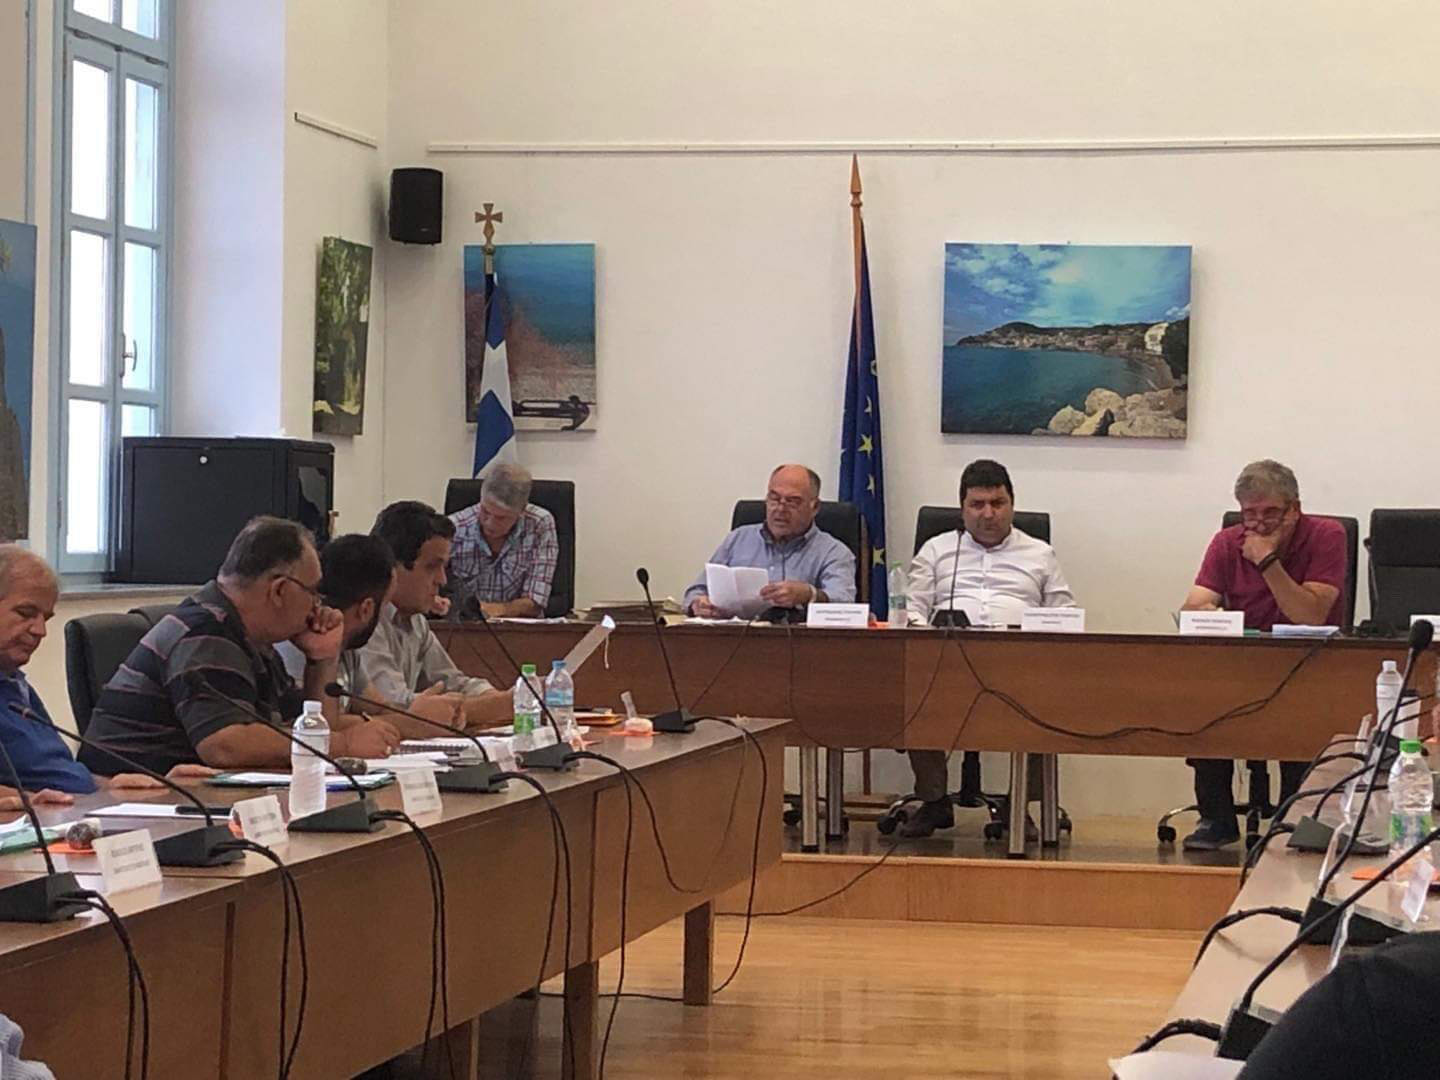 Εύβοια: Ψηφίστηκε το τεχνικό πρόγραμμα του 2021 του Δήμου Μαντουδίου Λίμνης Αγίας Άννας